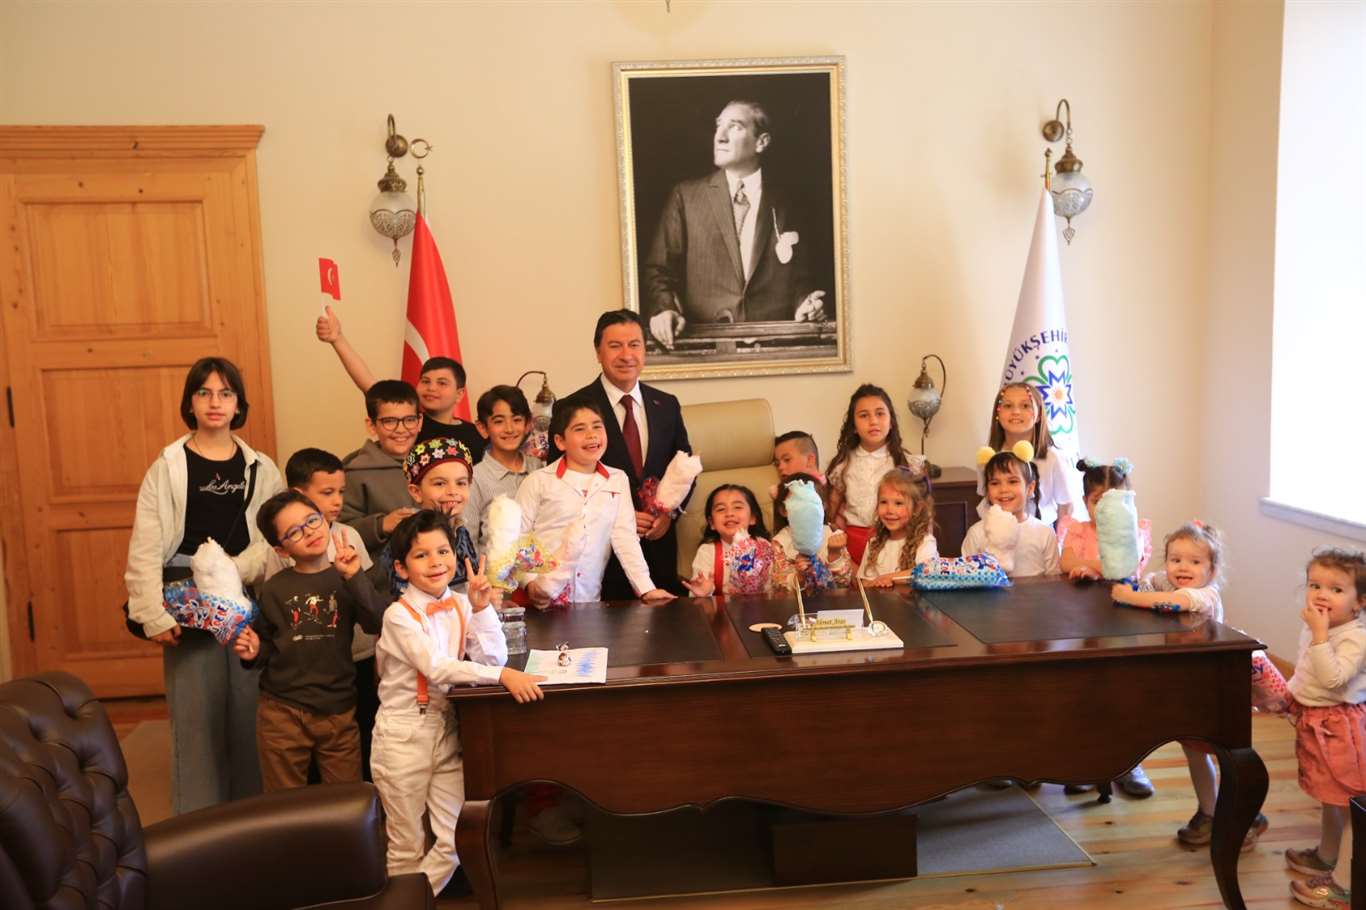 Başkan Aras 23 Nisan'da koltuğu çocuklara devretti haberi